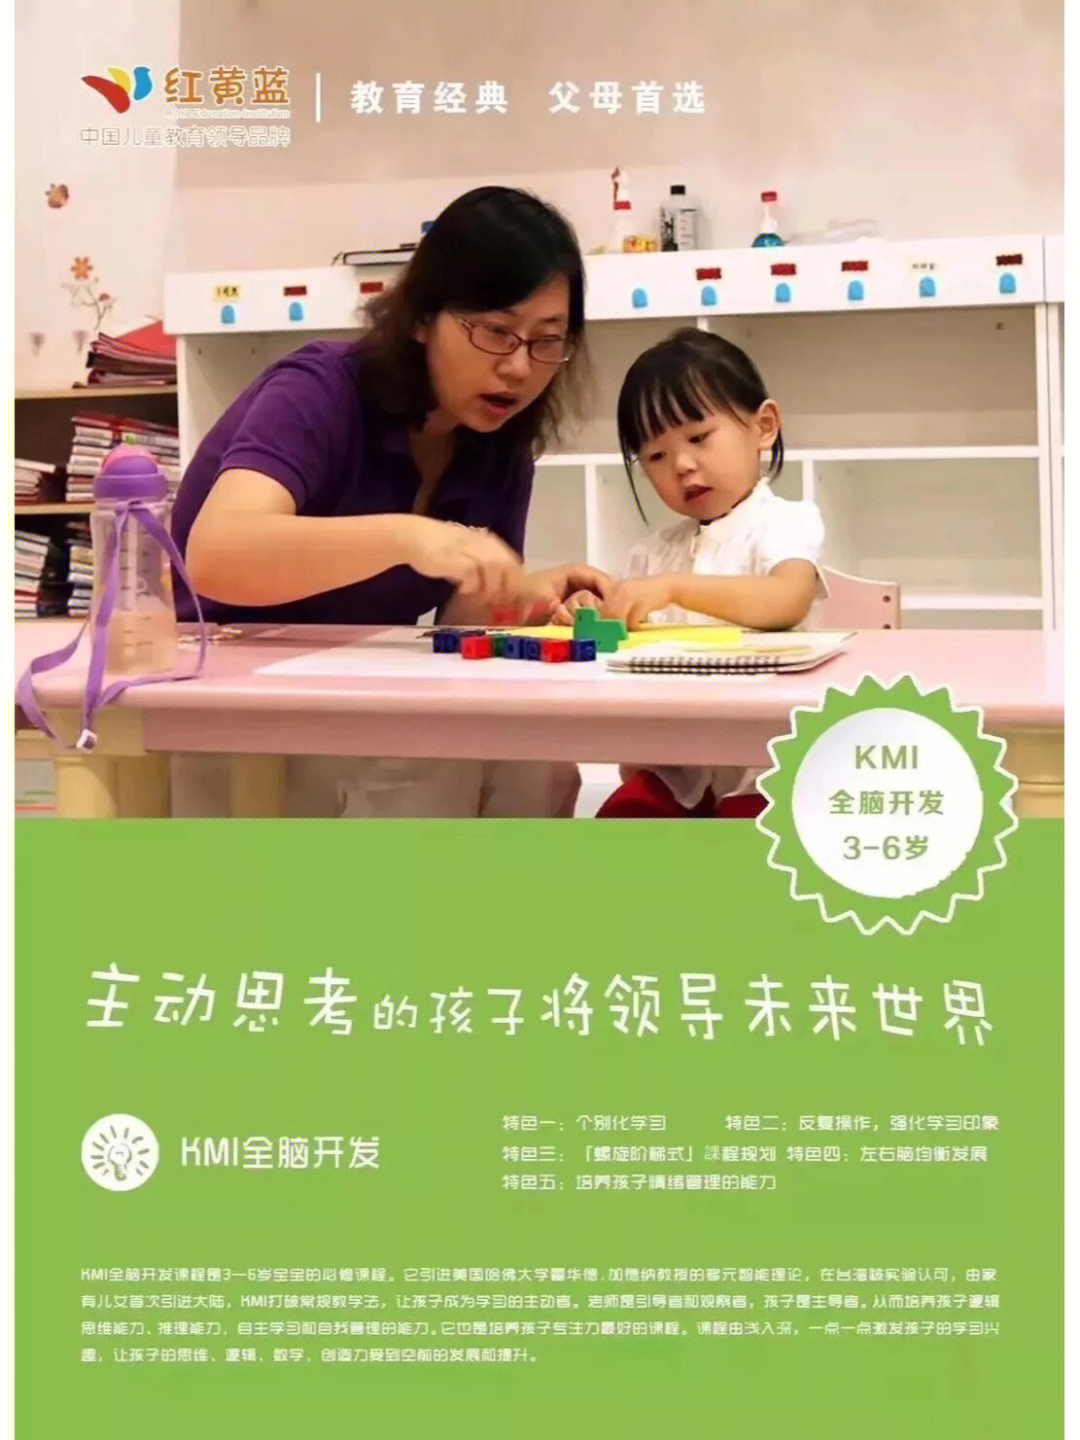 在台湾被实验认可,由红黄蓝首次引进大陆,kmi打破常规教学法,让孩子